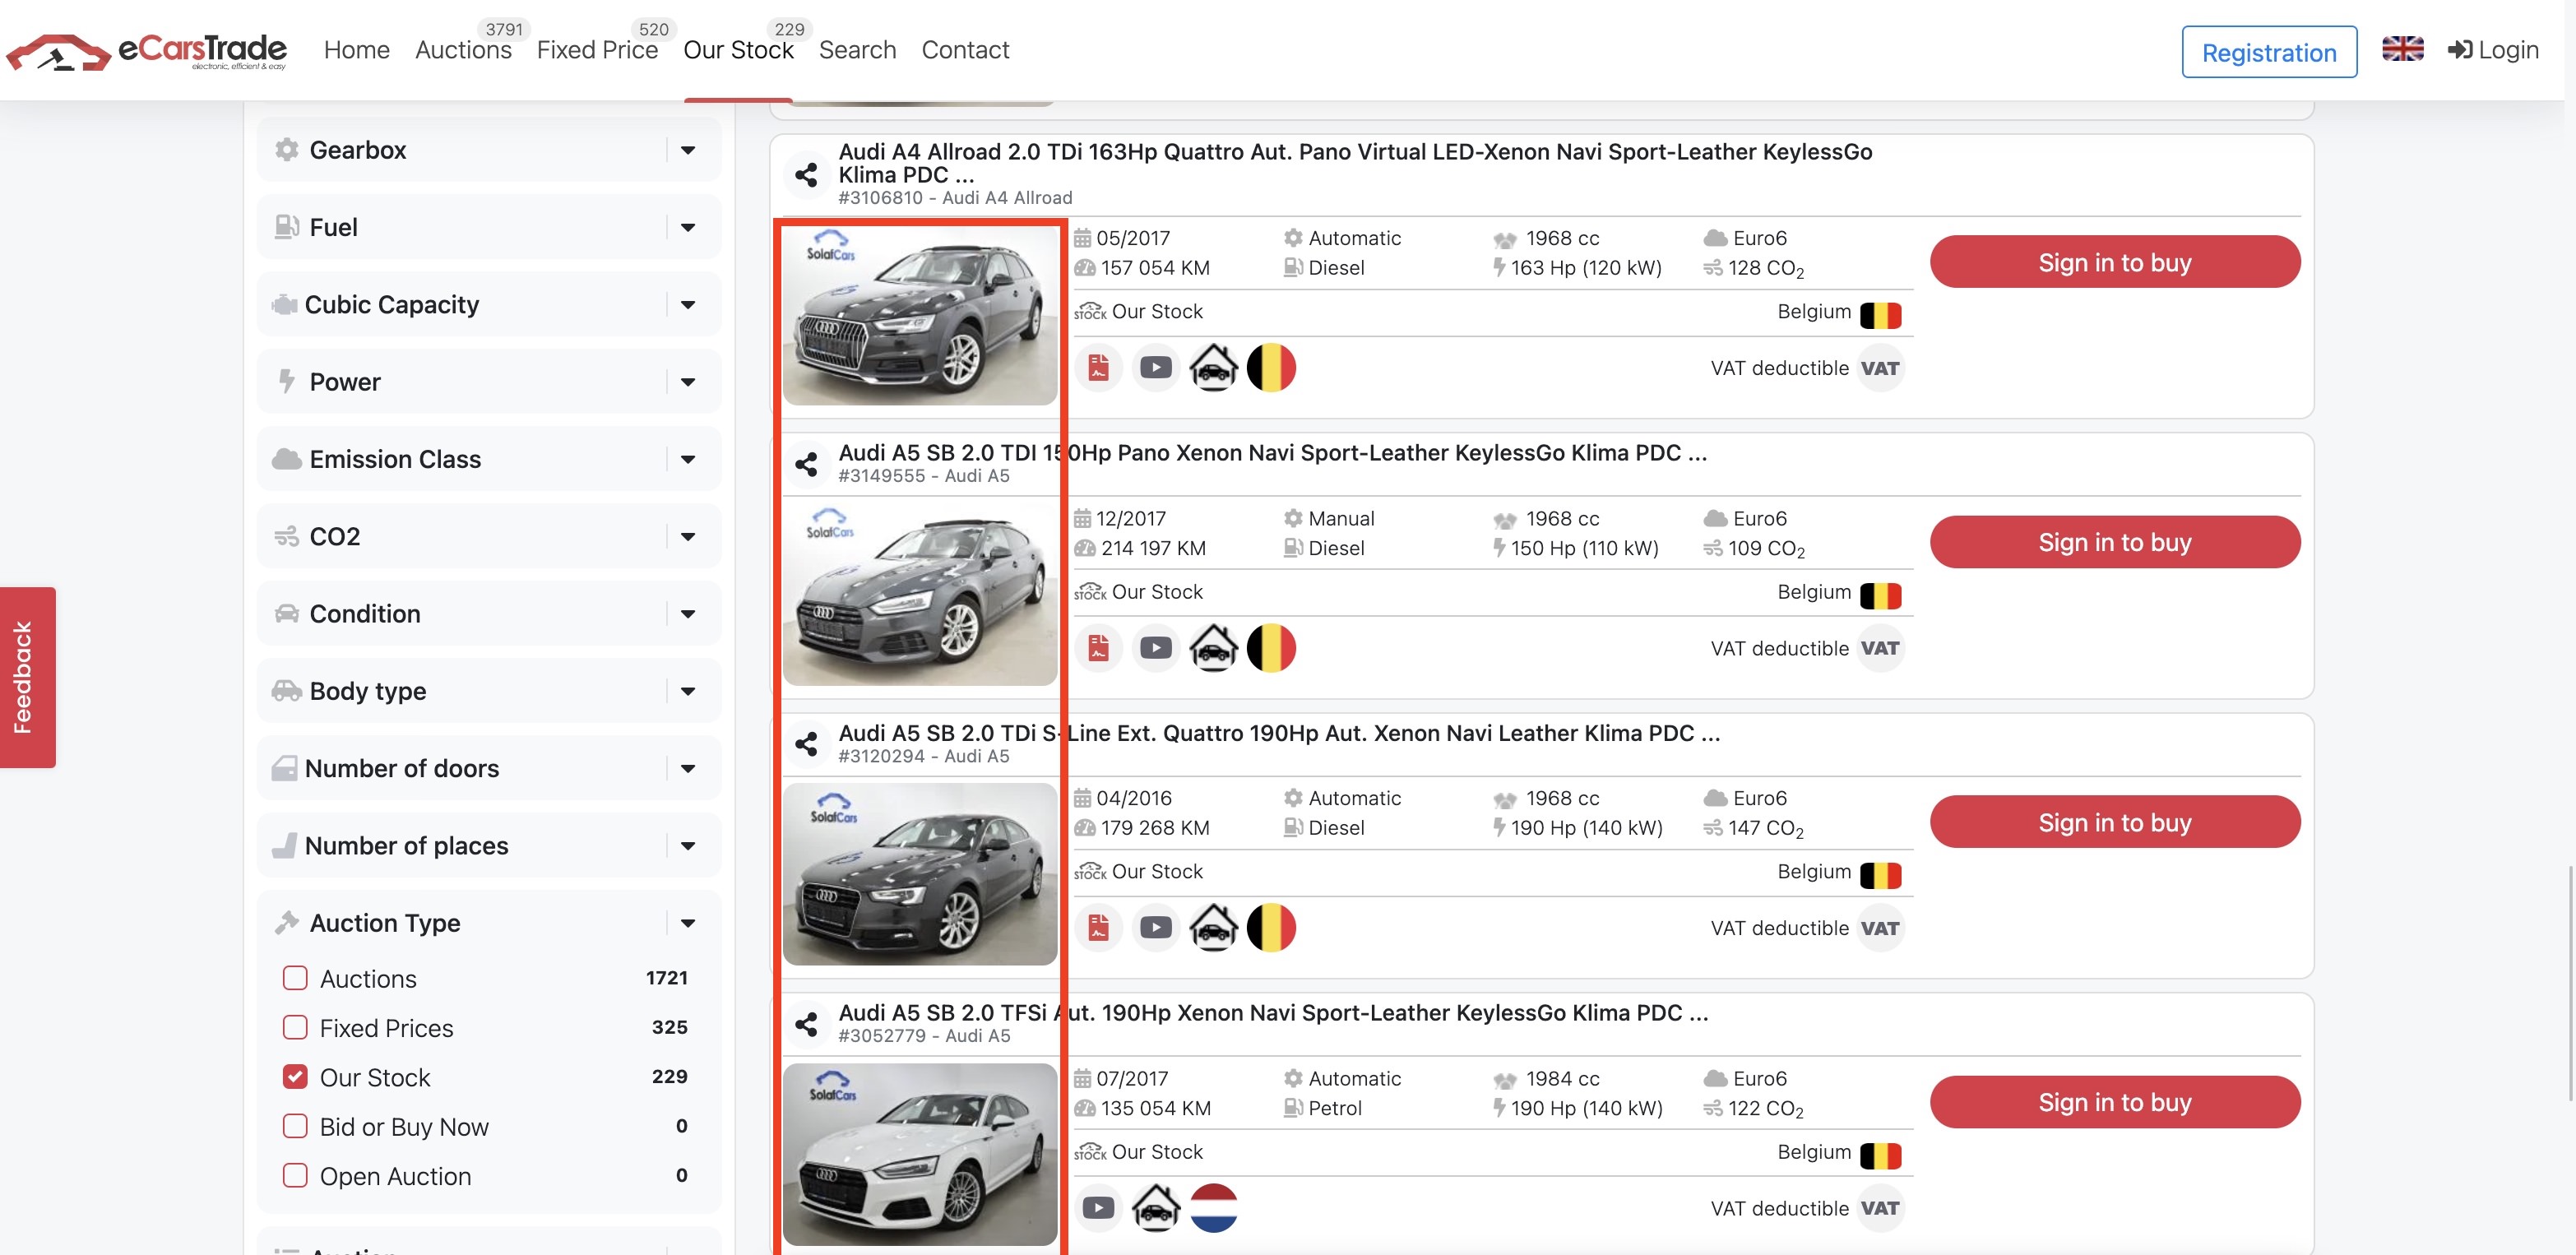 Snímek obrazovky eCarsTrade z webu zobrazující fotografie automobilů